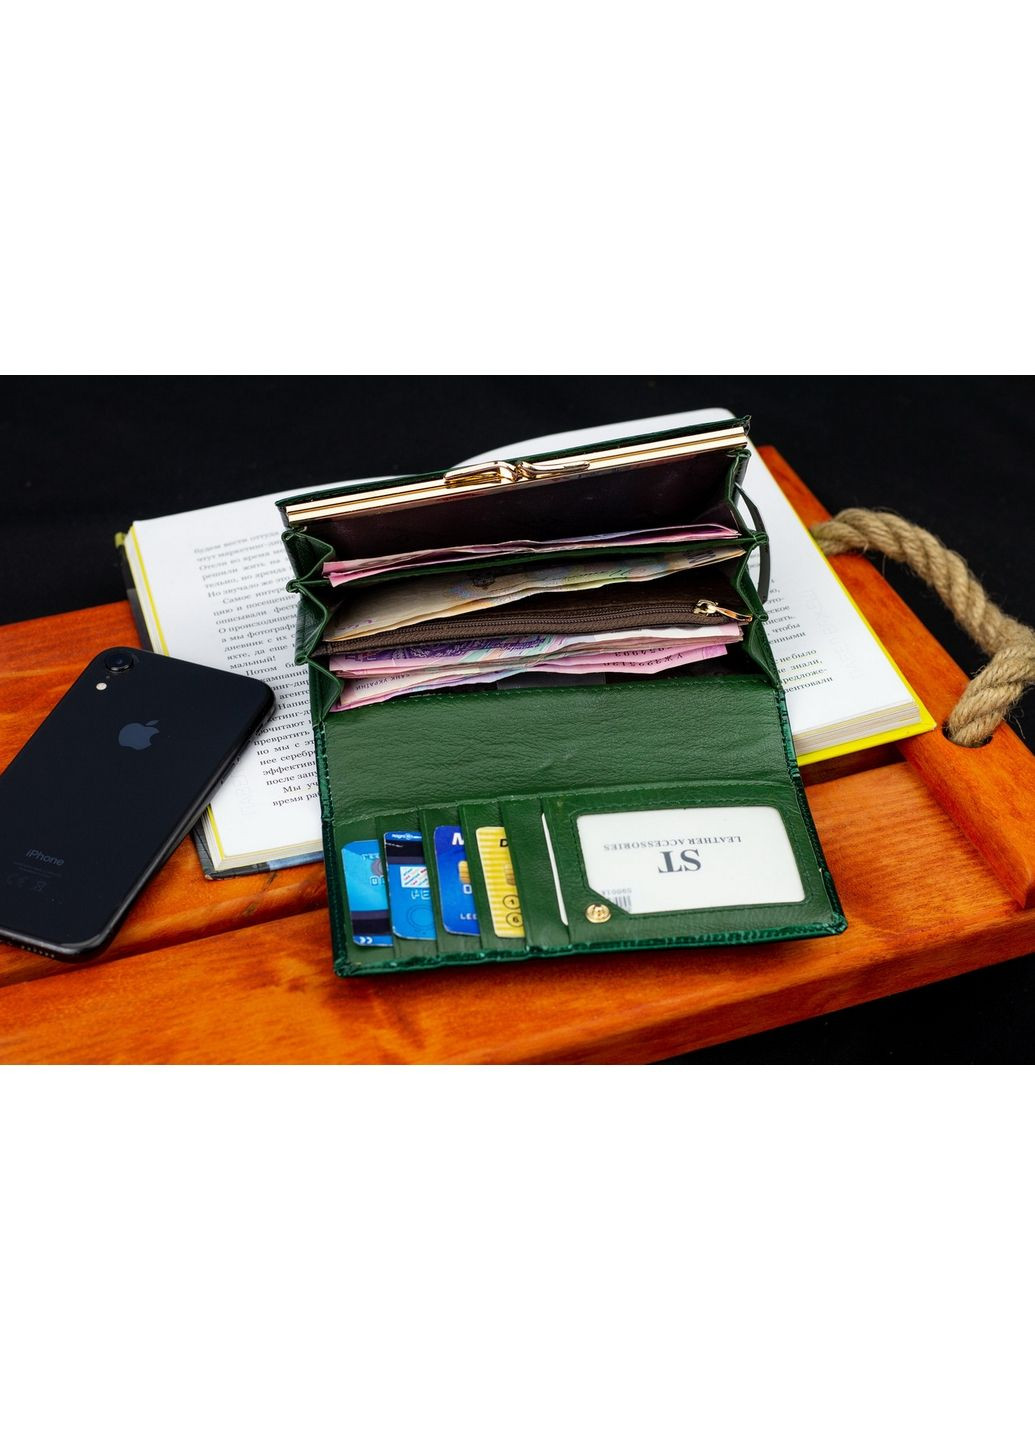 Кожаный кошелек st leather (288136243)